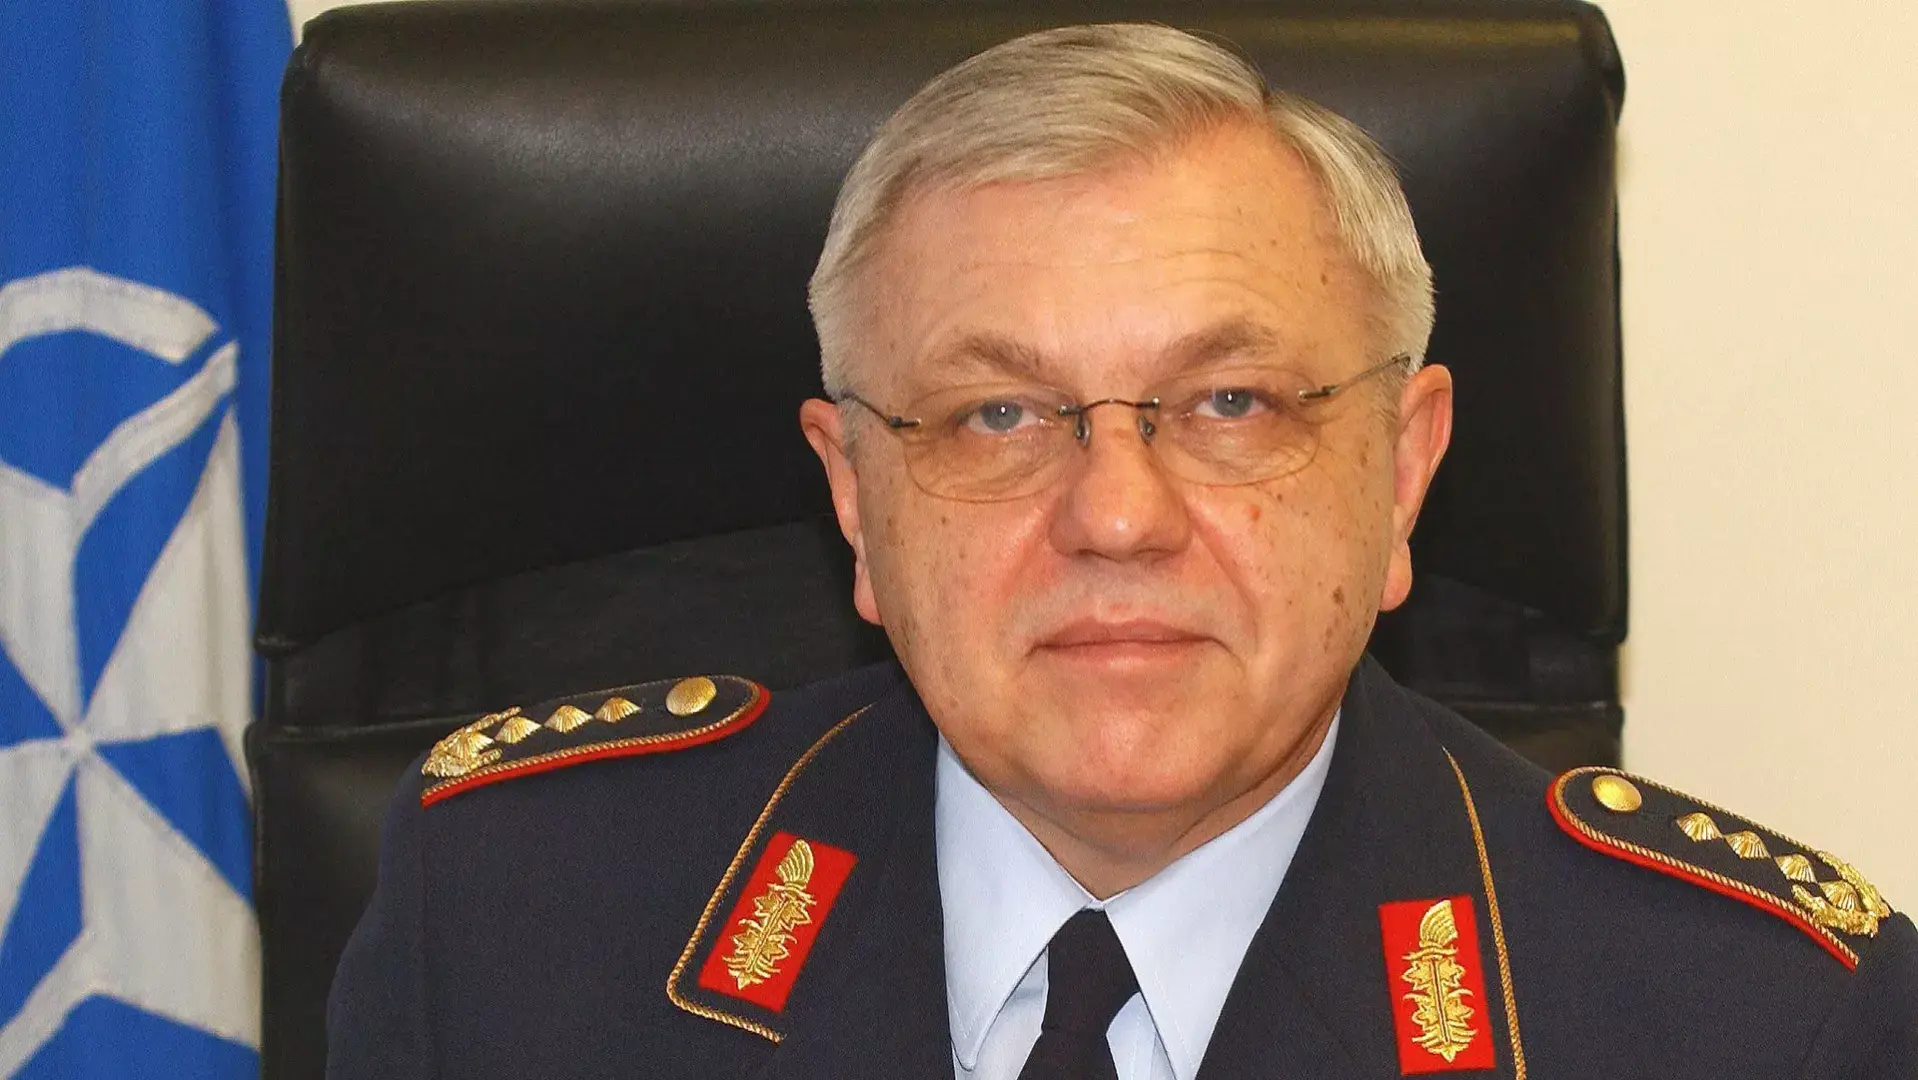 "Атакуют сразу": немецкий генерал восхитился ходом России на Украине